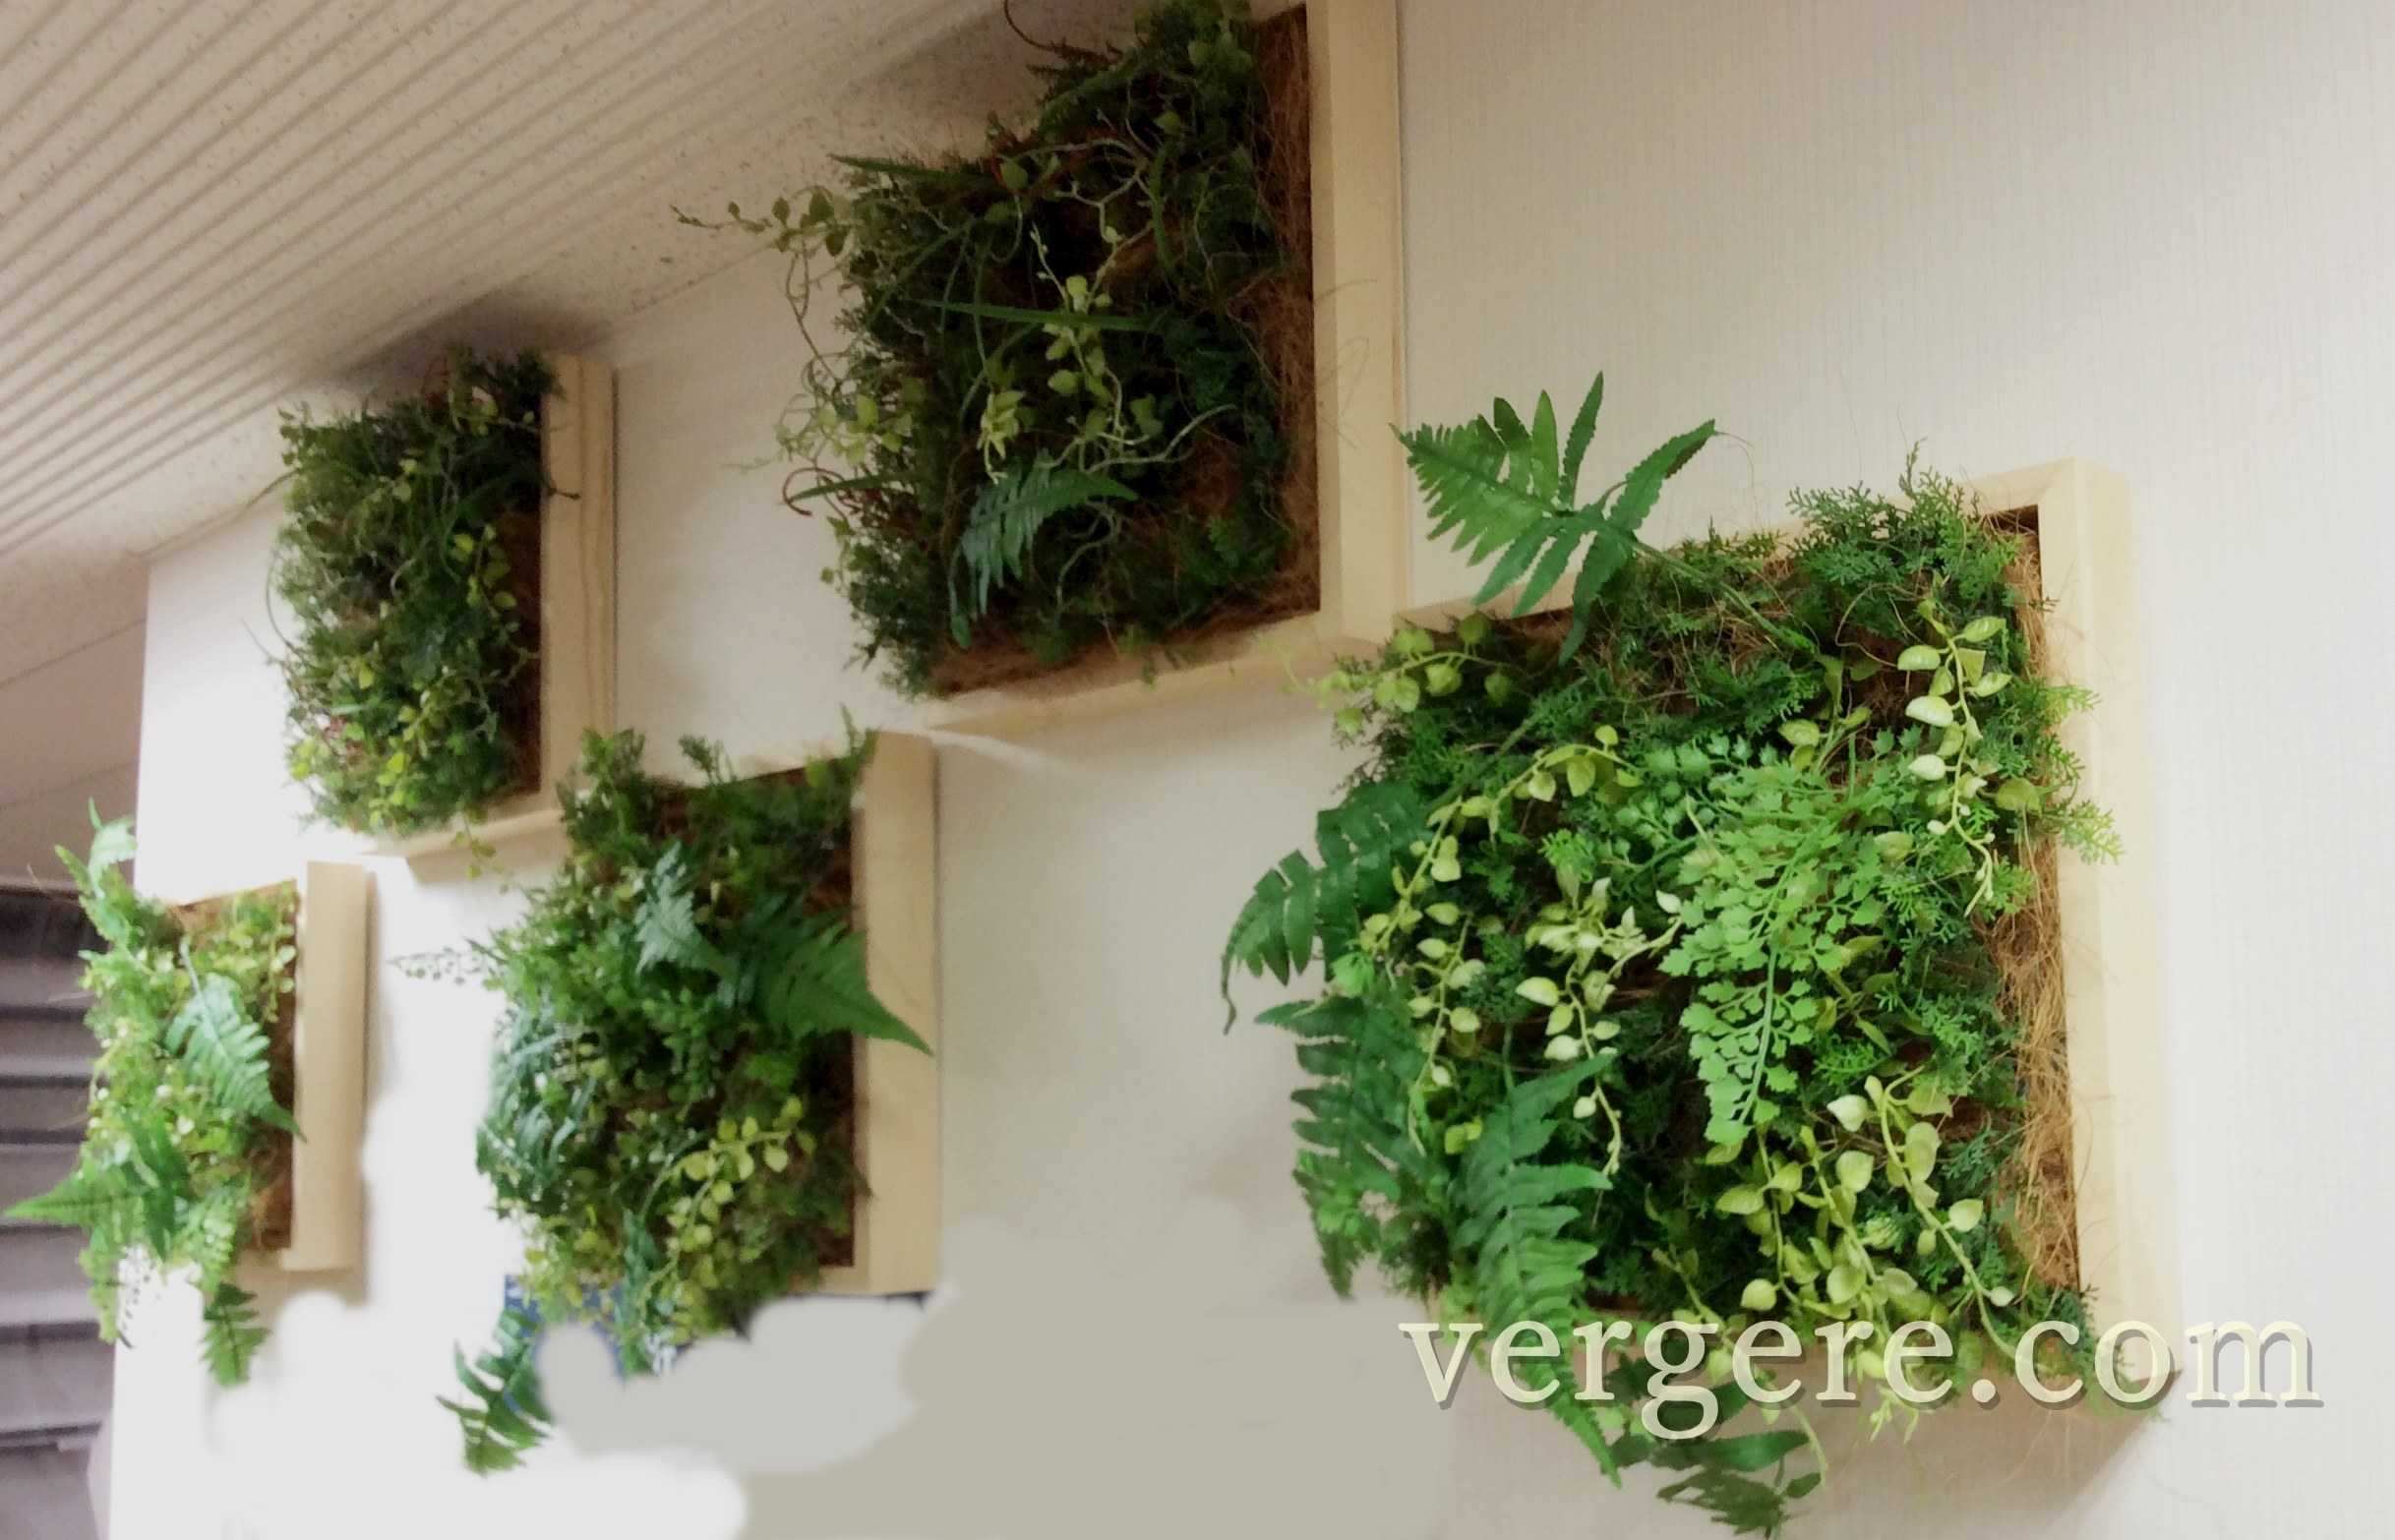 壁面緑化ミドリエ | 観葉植物レンタルとグリーンレンタルのヴェルジェ